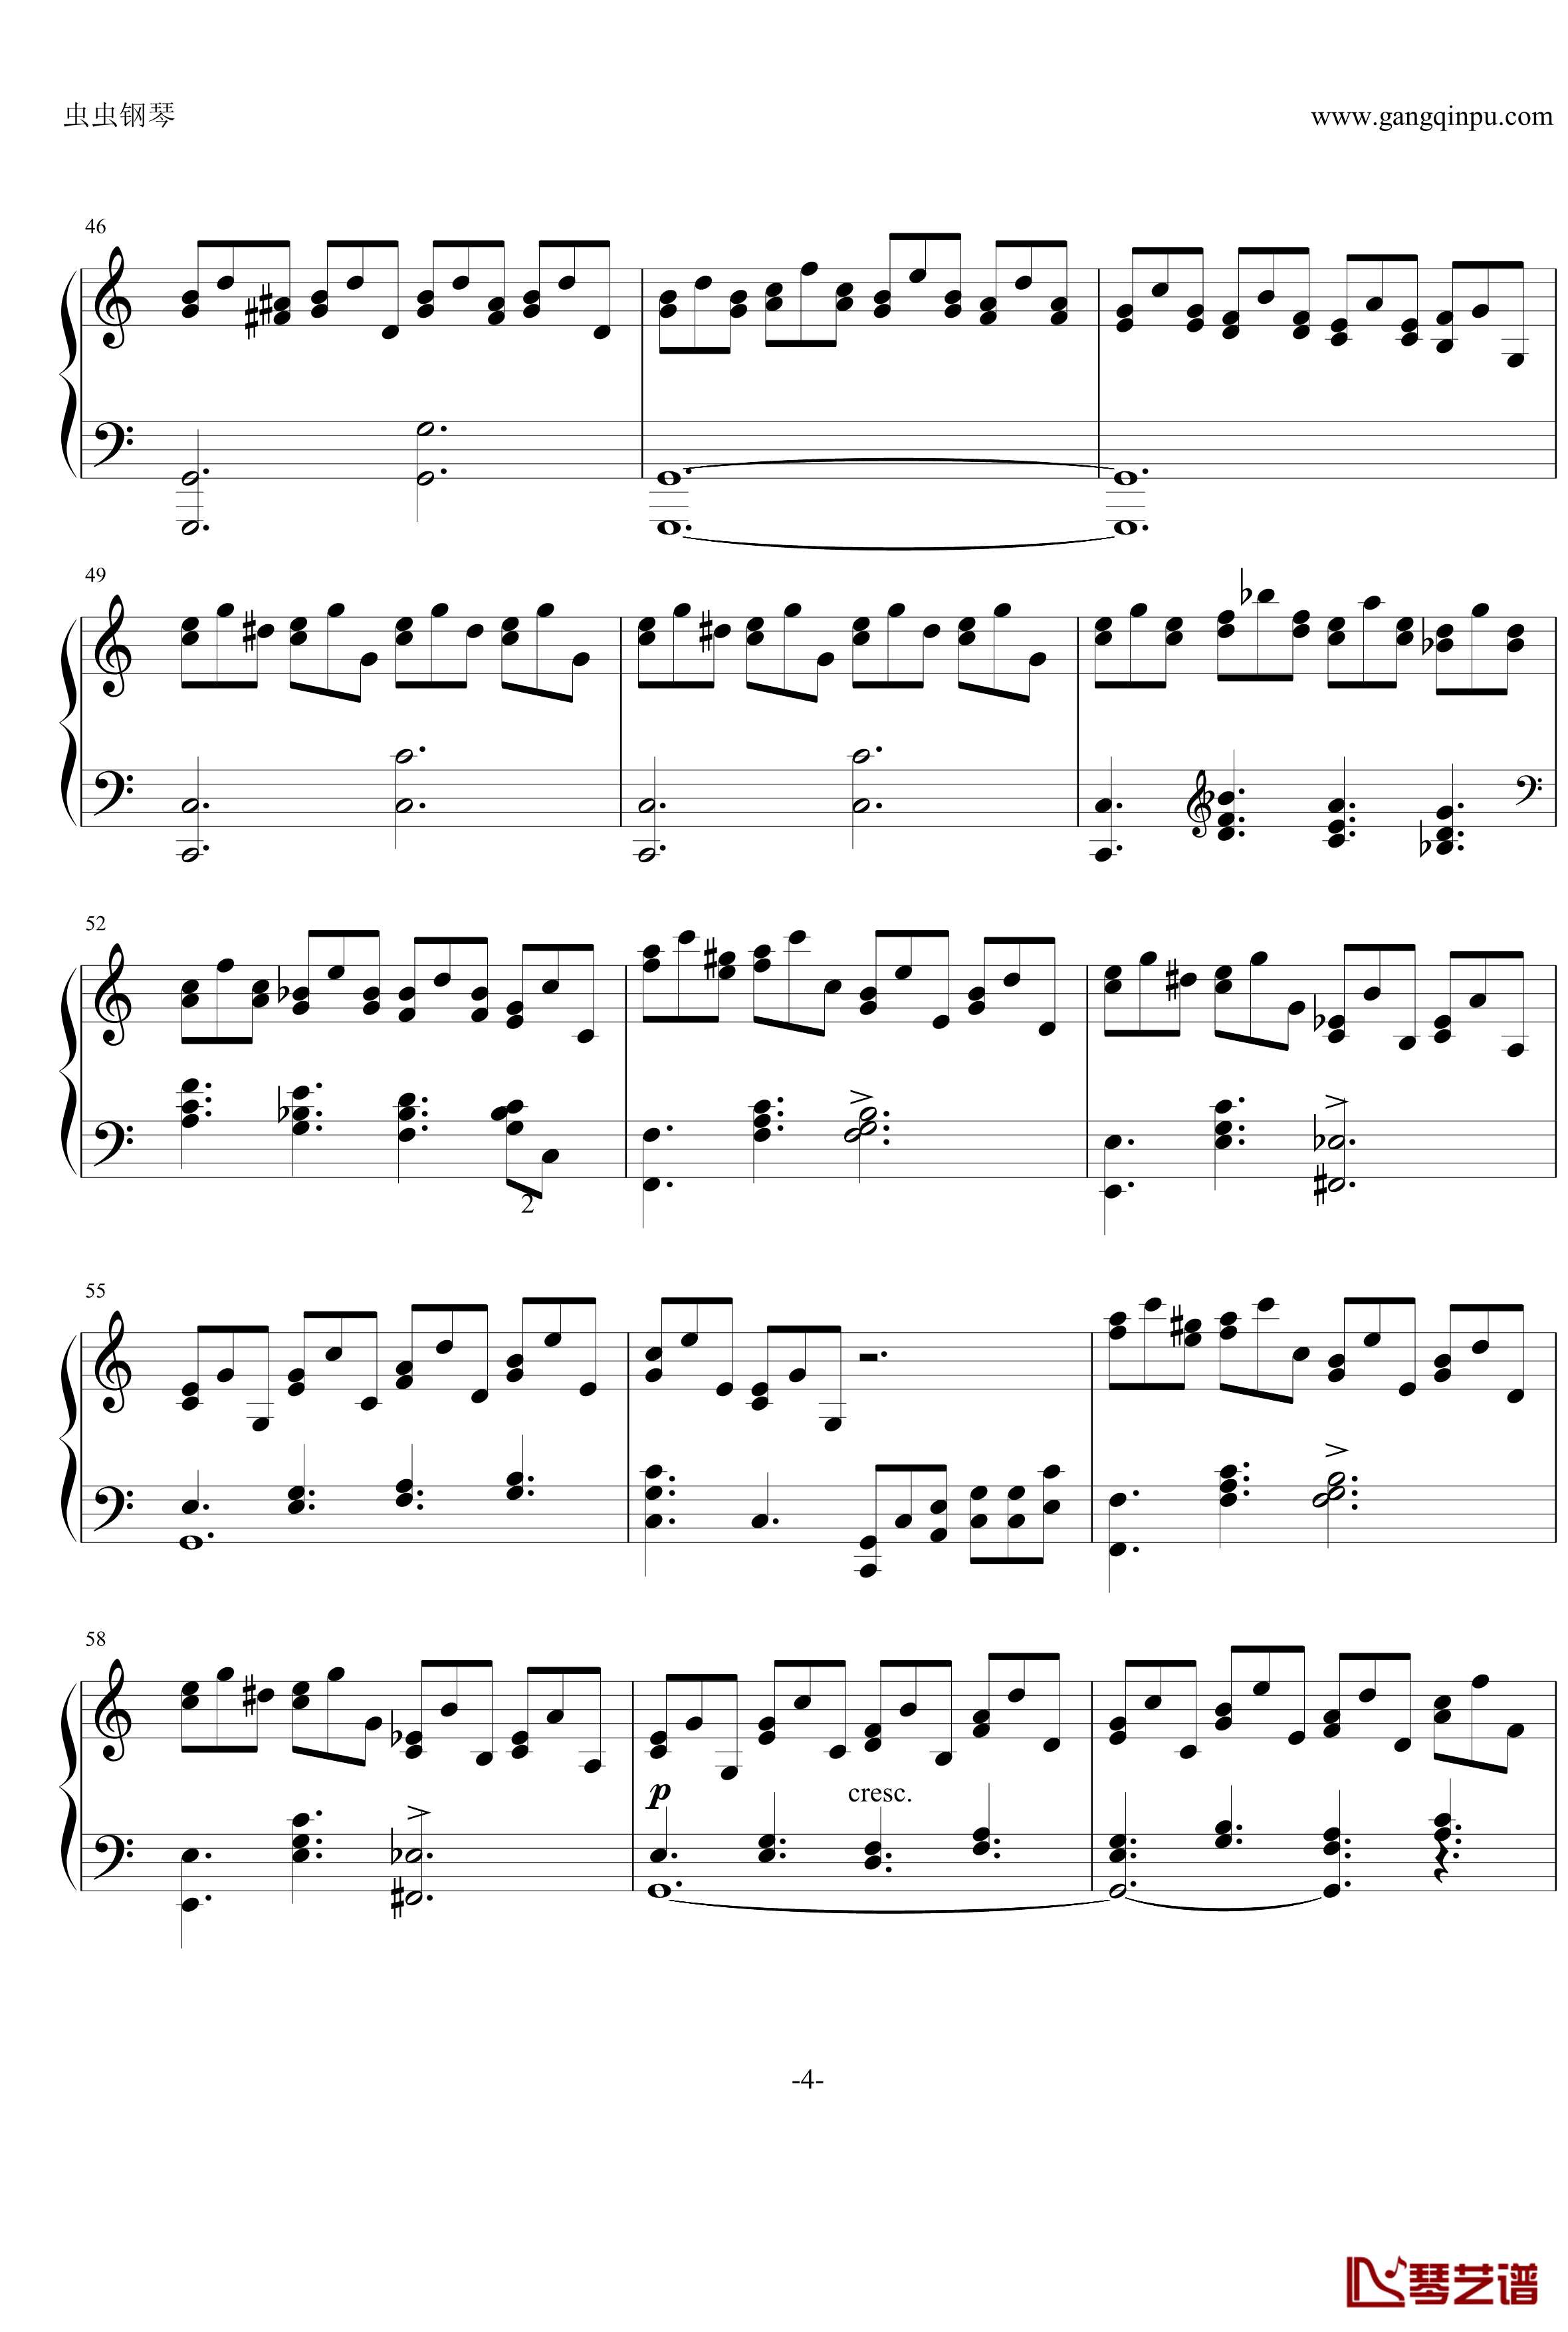 巧技练习曲钢琴谱-莫什科夫斯基-Moszkowski4